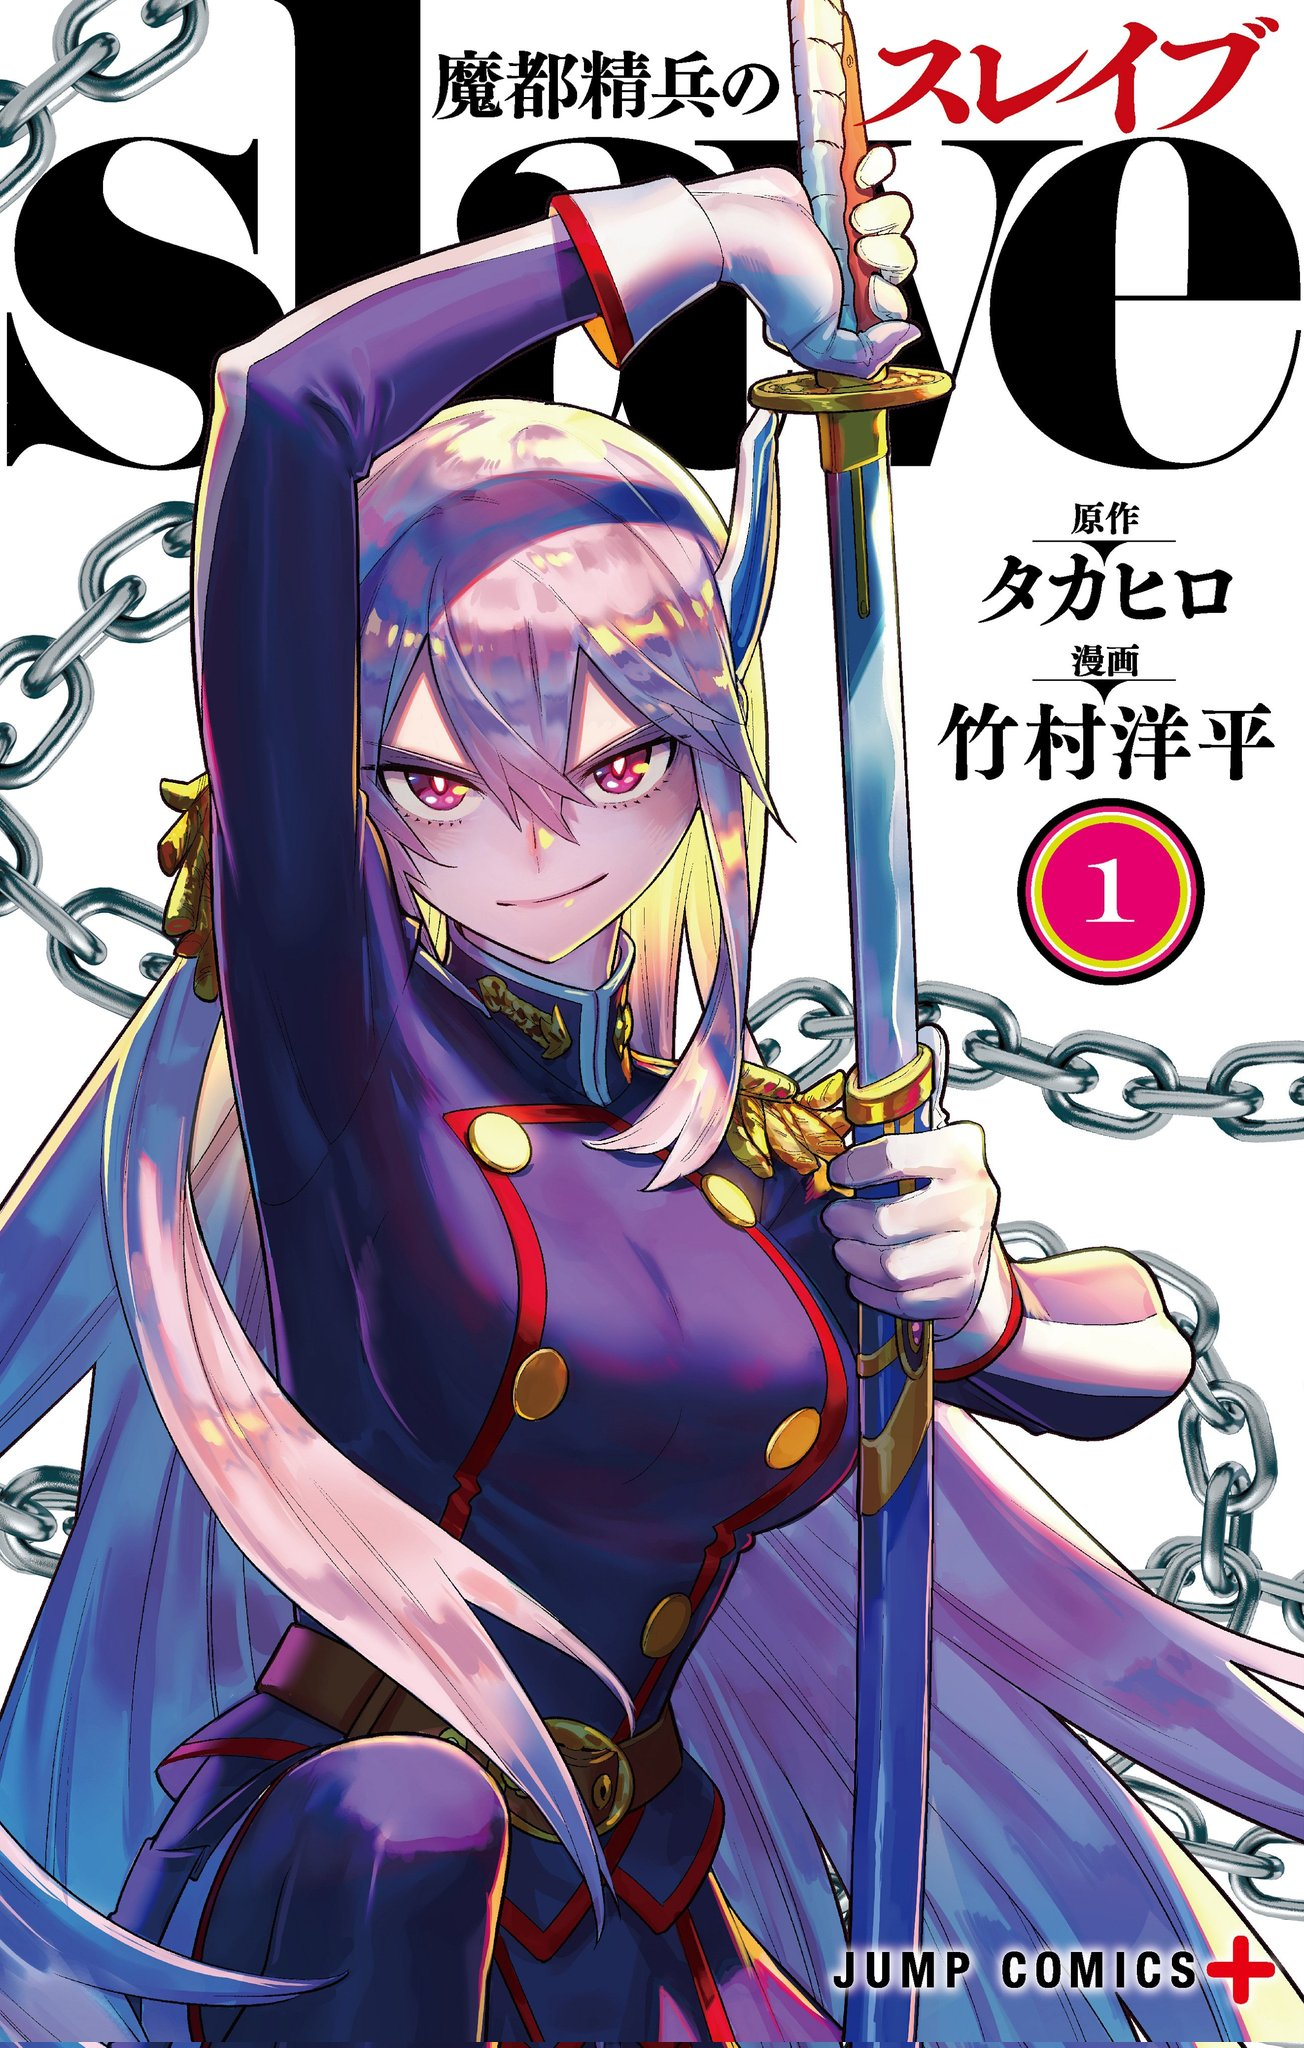 Mato-Seihei-no-Slave-manga-volume-1-cover